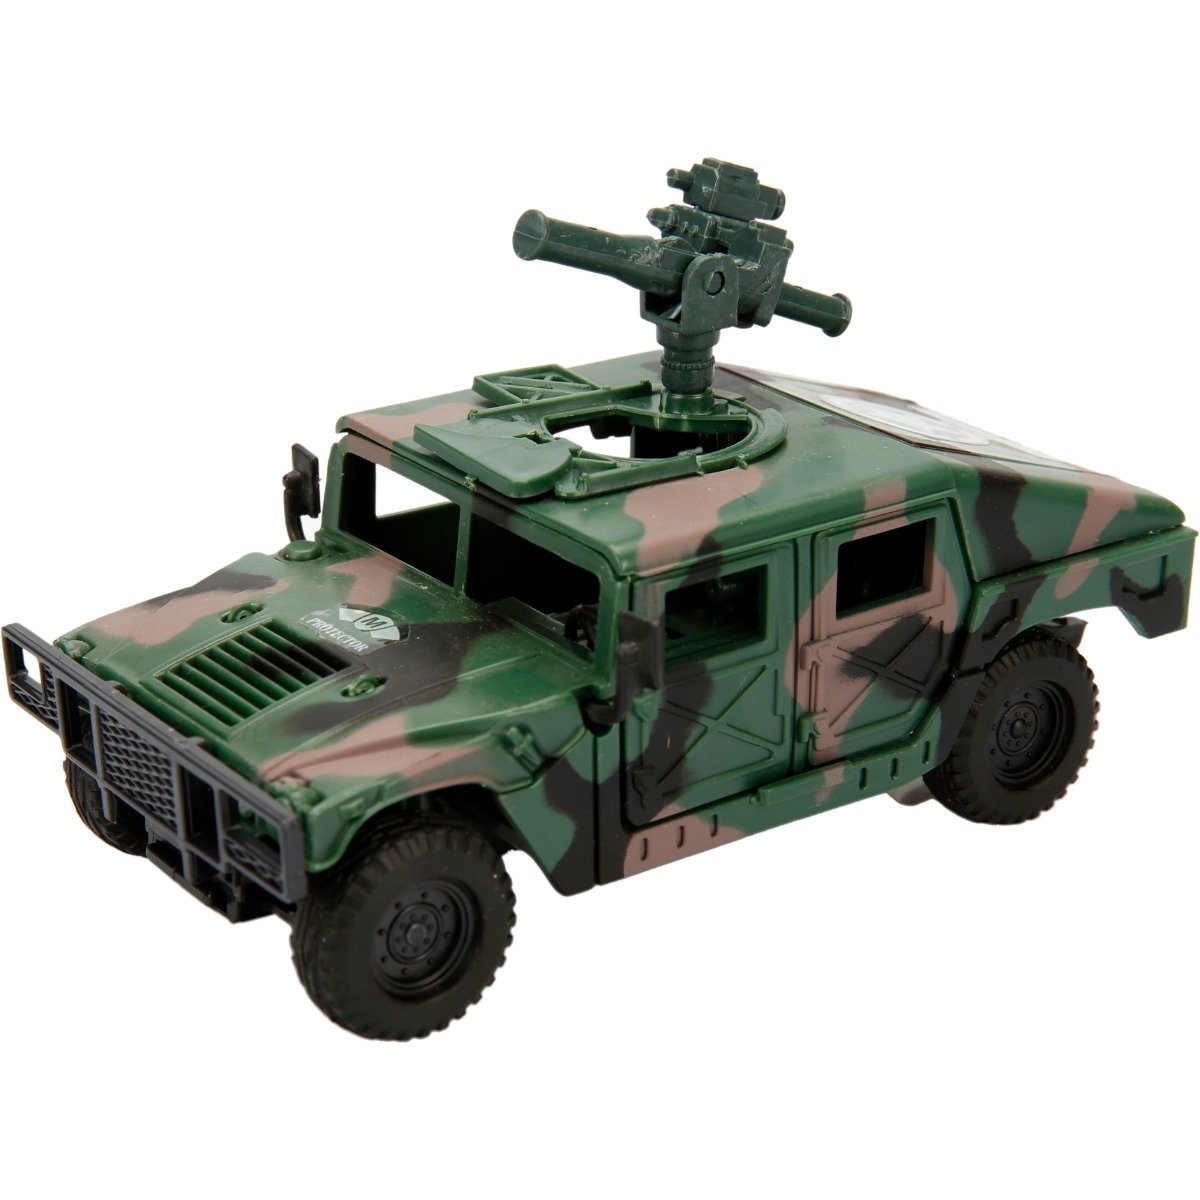 Vehicul militar Jeep cu pusca, Sunman, 13 cm